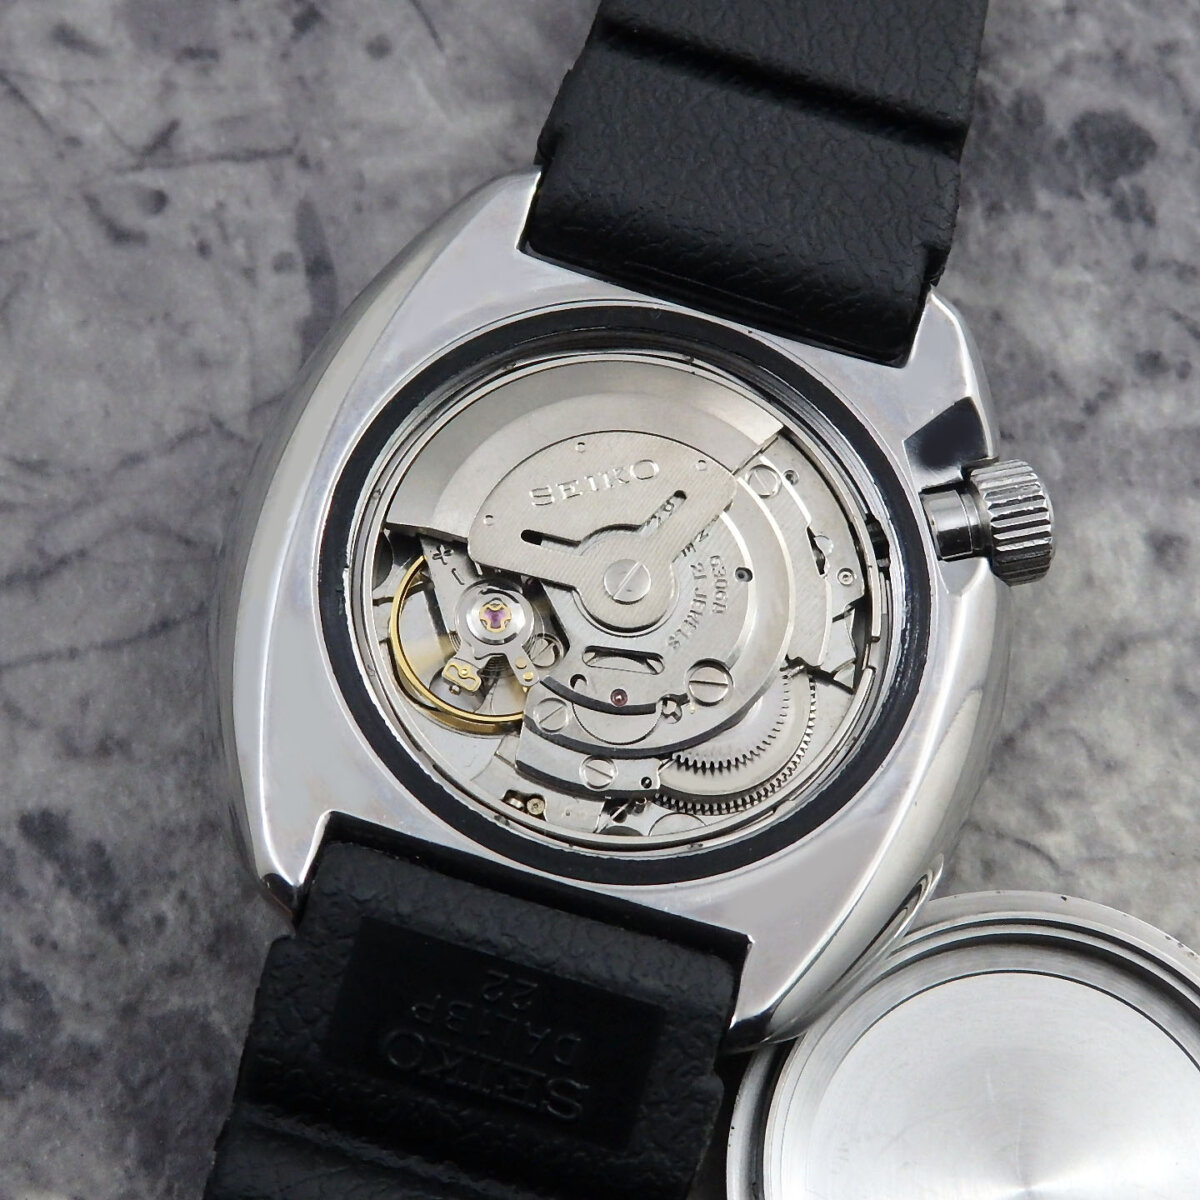 SEIKO 3rdモデル 150m ダイバー Ref.6306-7001 1978年 国内仕様 昭和53年 セイコー アンティーク 国産 腕時計